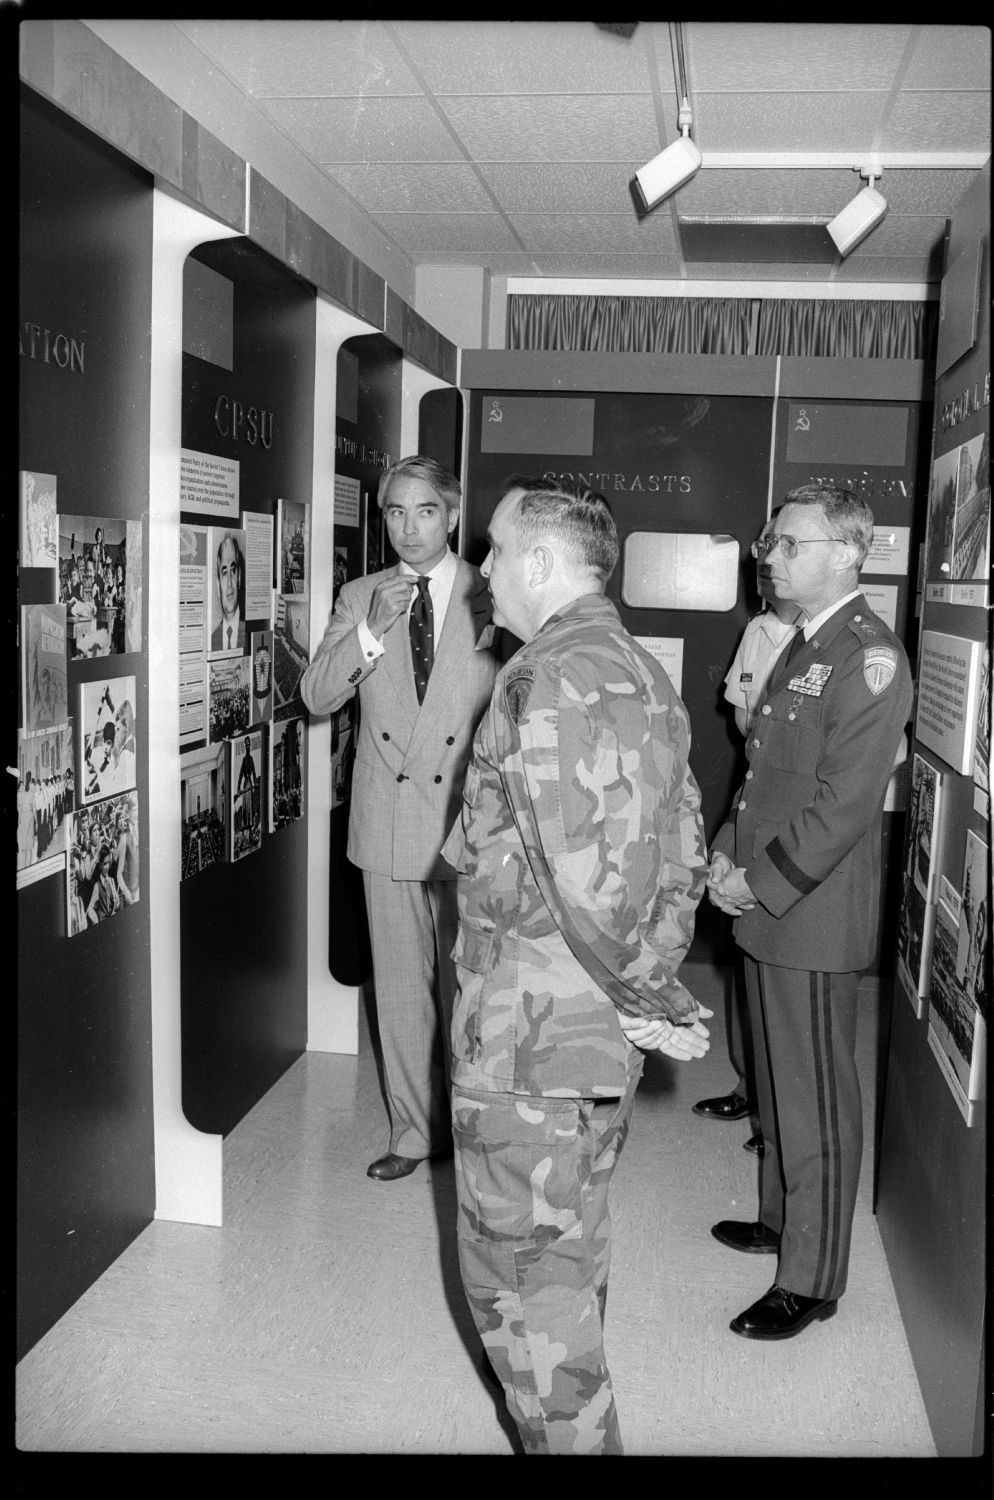 s/w-Fotografie: Eröffnung des Soviet Soldier Display im "McNair Museum" in Berlin-Lichterfelde (AlliiertenMuseum/U.S. Army Photograph Public Domain Mark)